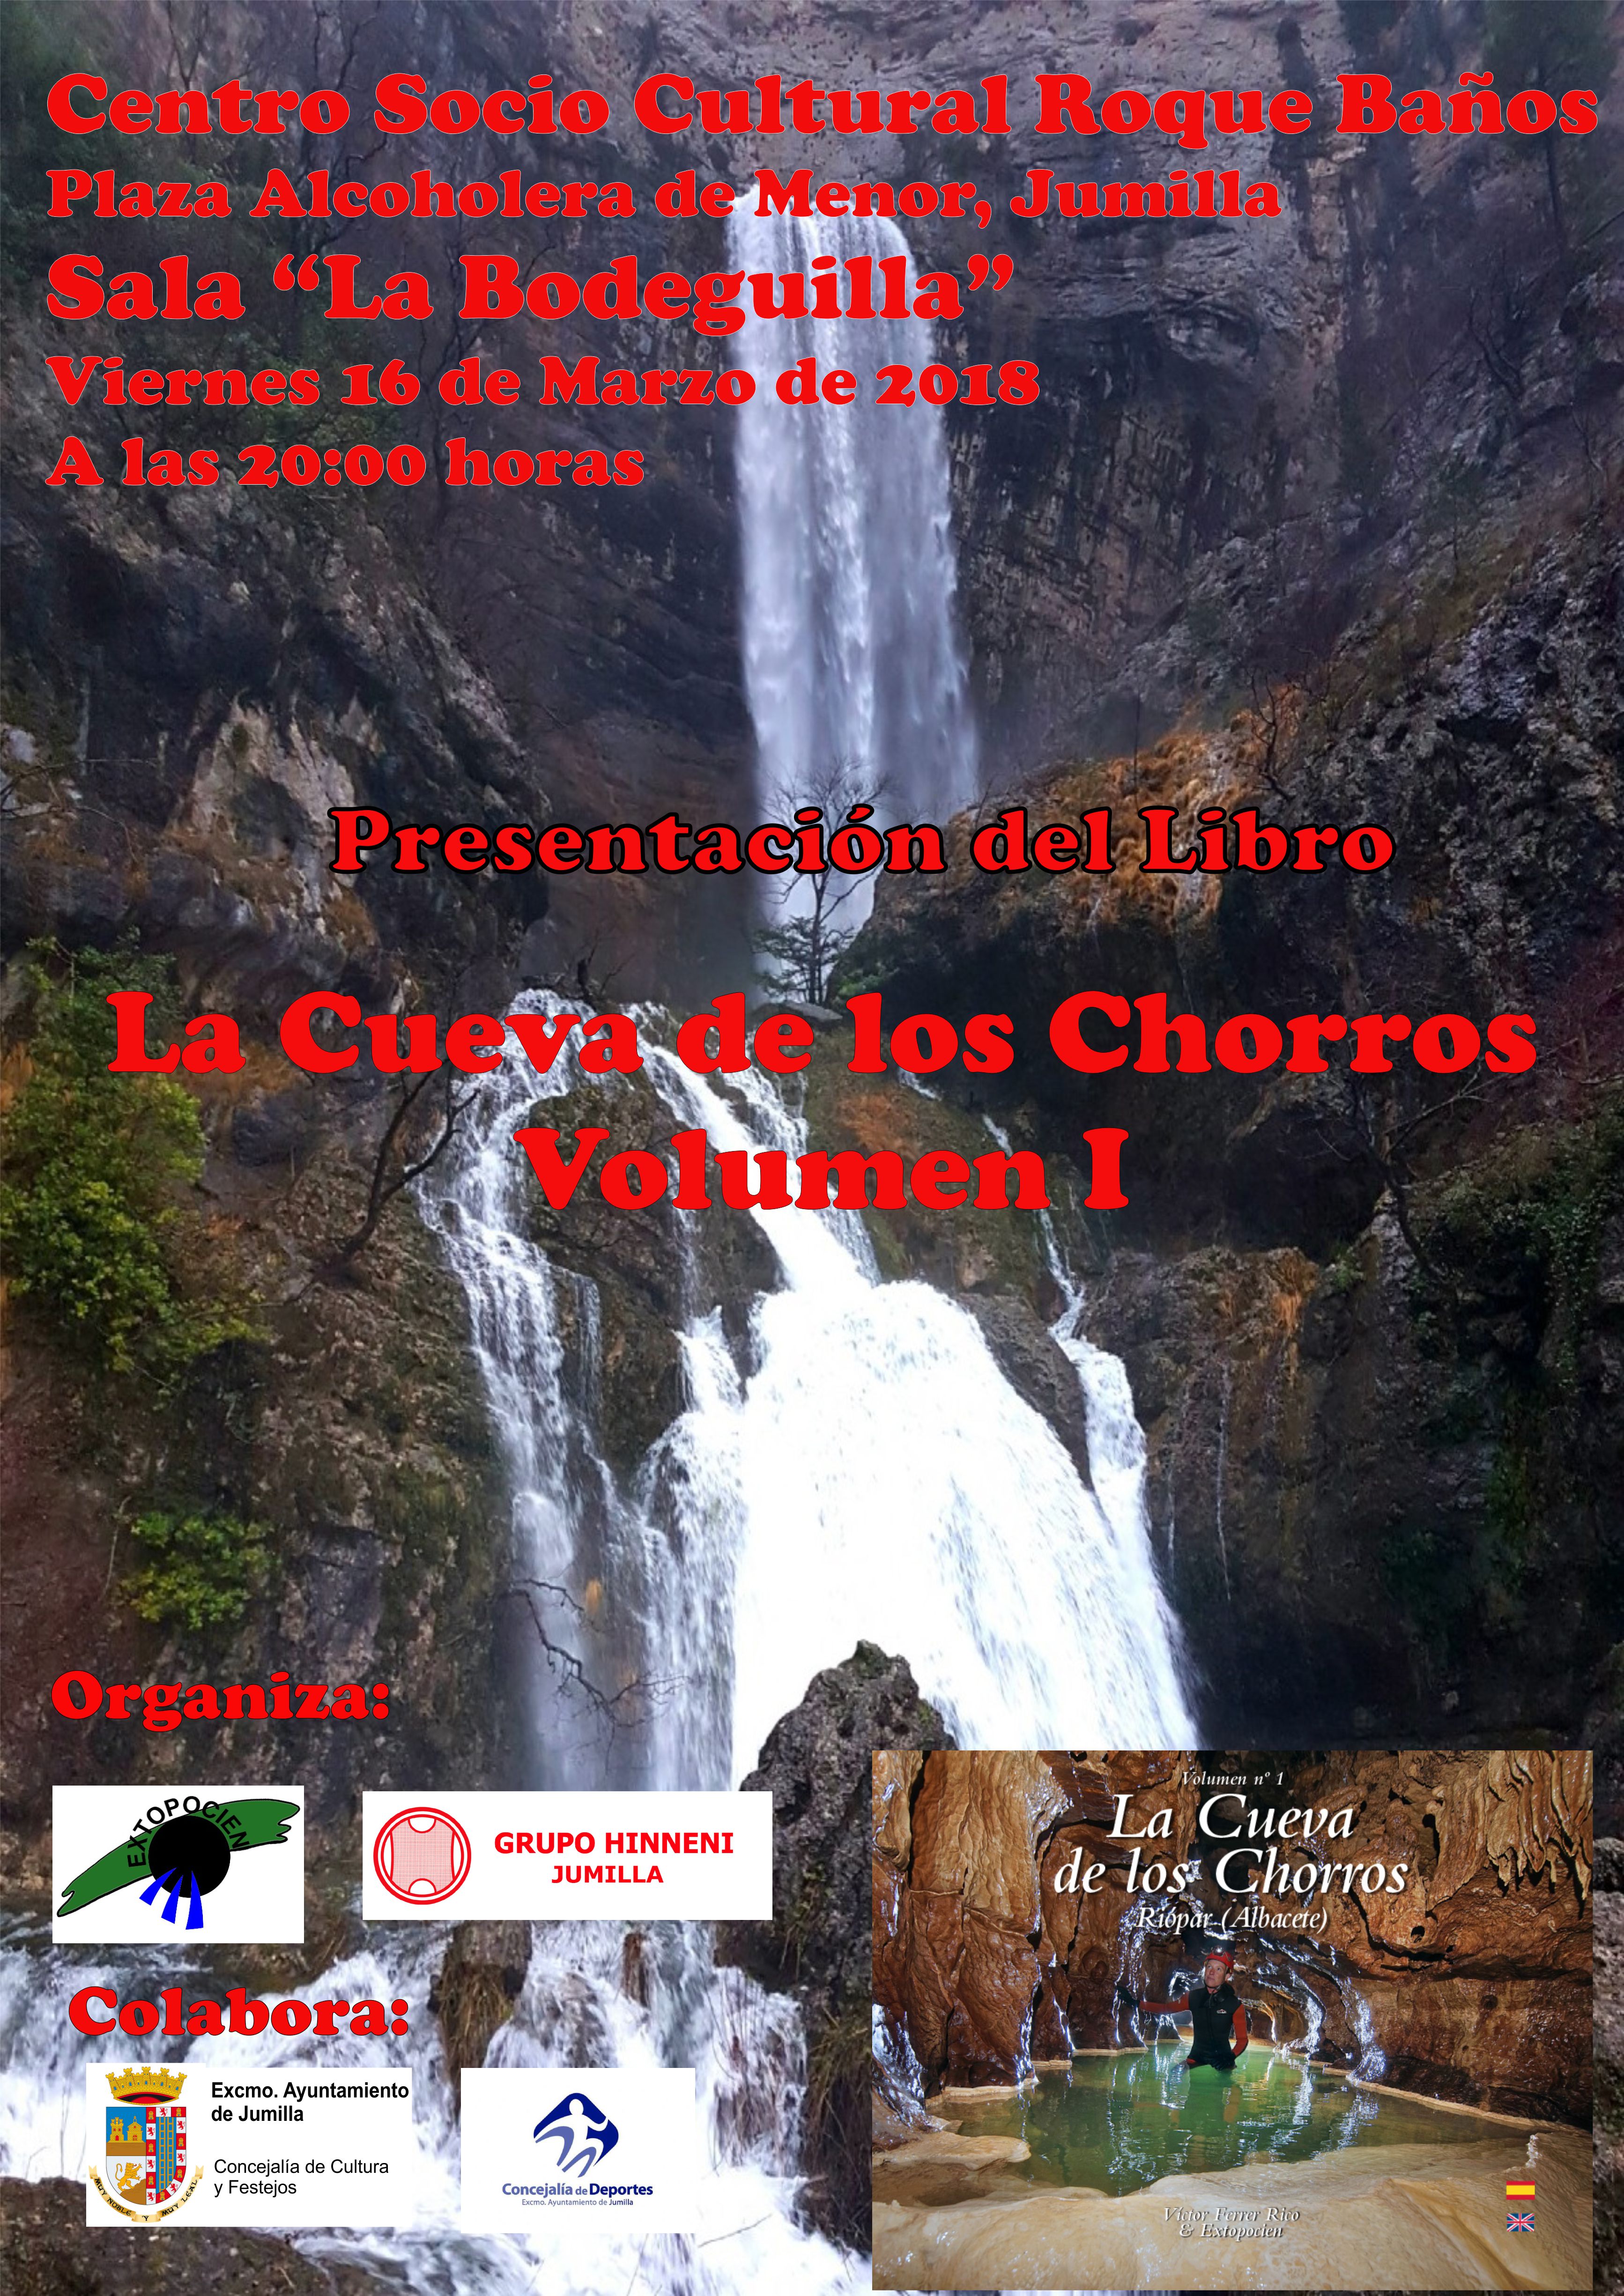 Este viernes, el Grupo Hinneni y EXTOPOCIEN presentan el Libro de Fotografía sobre la Cueva de los Chorros